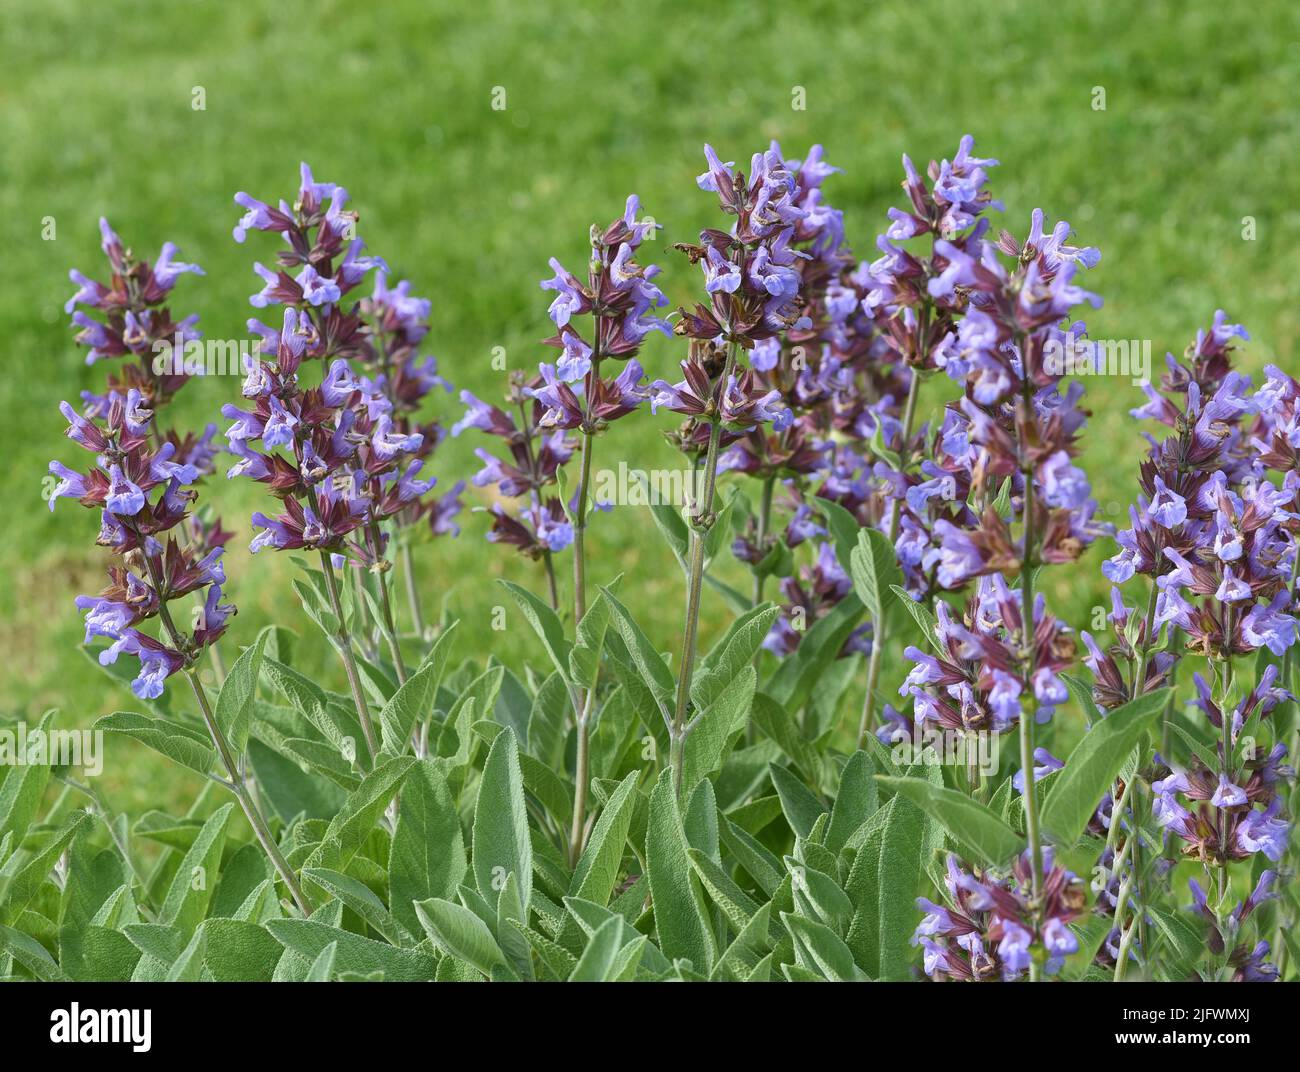 Salbei, Salvia officinalis, ist eine wichtige Heilpflanze und eine Duftpflanze mit blauen Blueten. Sie ist eine schoene Staude und wird auch in der Ku Stock Photo